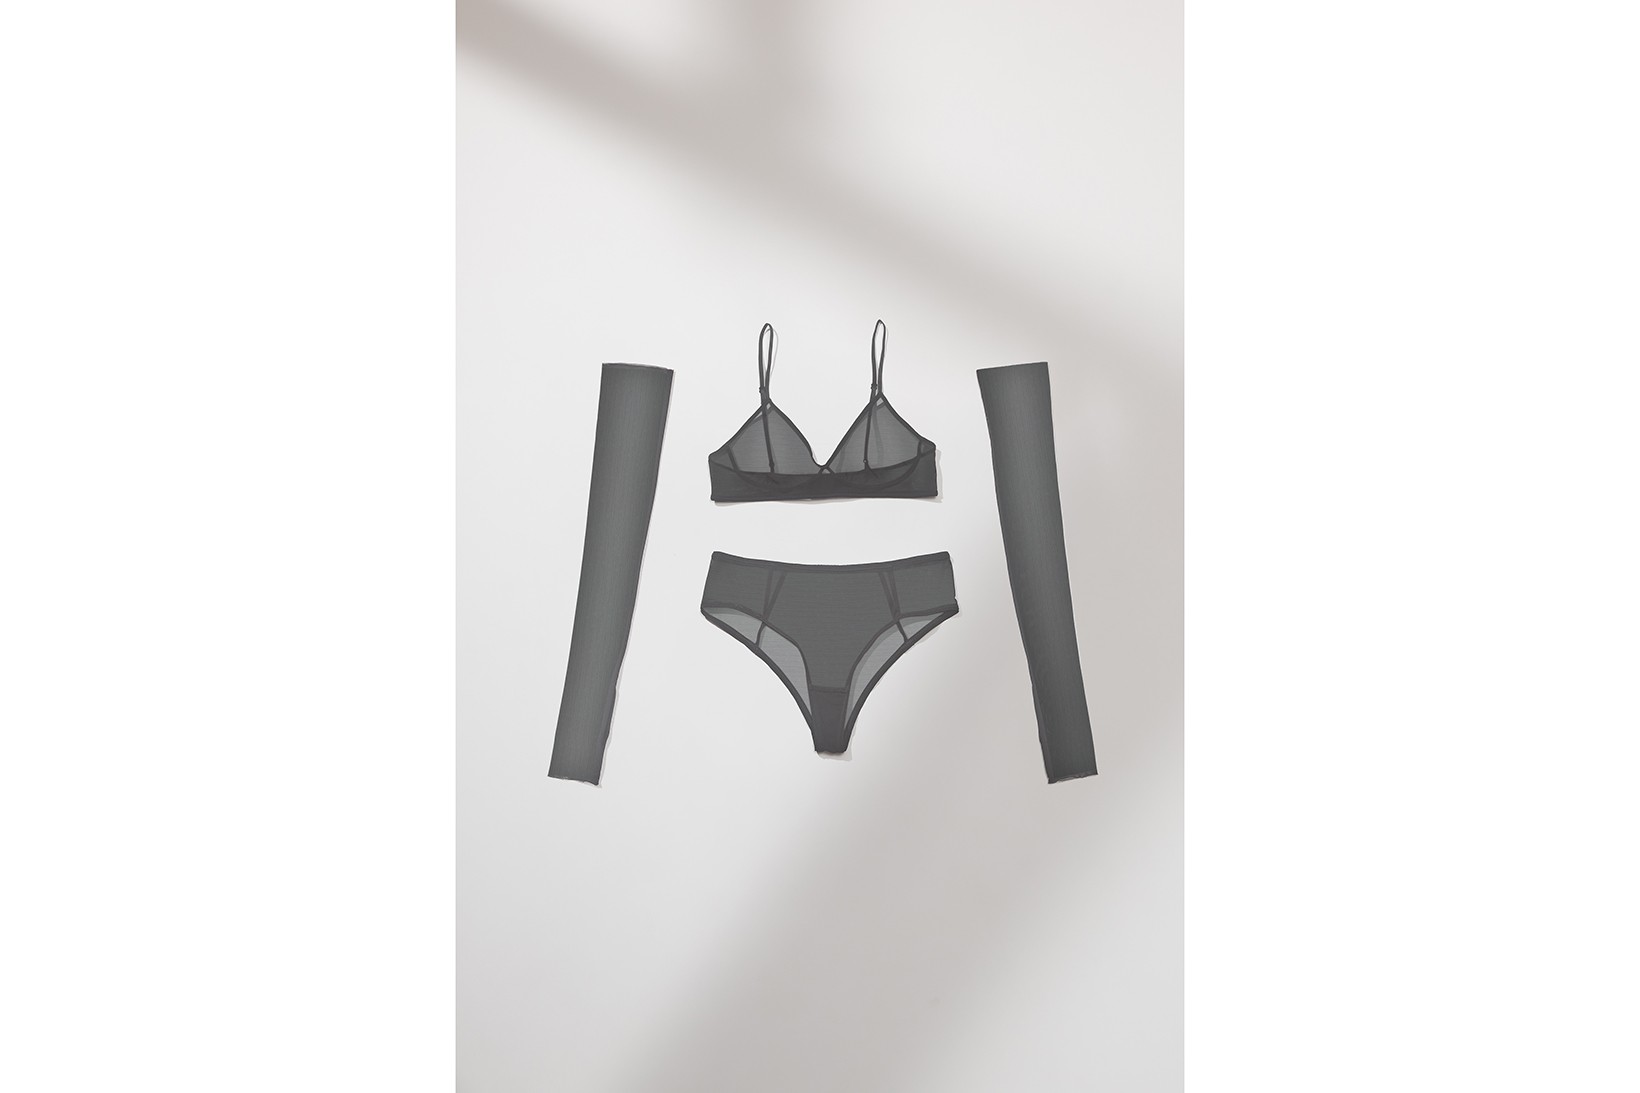 zara lingerie collection bras underwear shapewear loungewear release